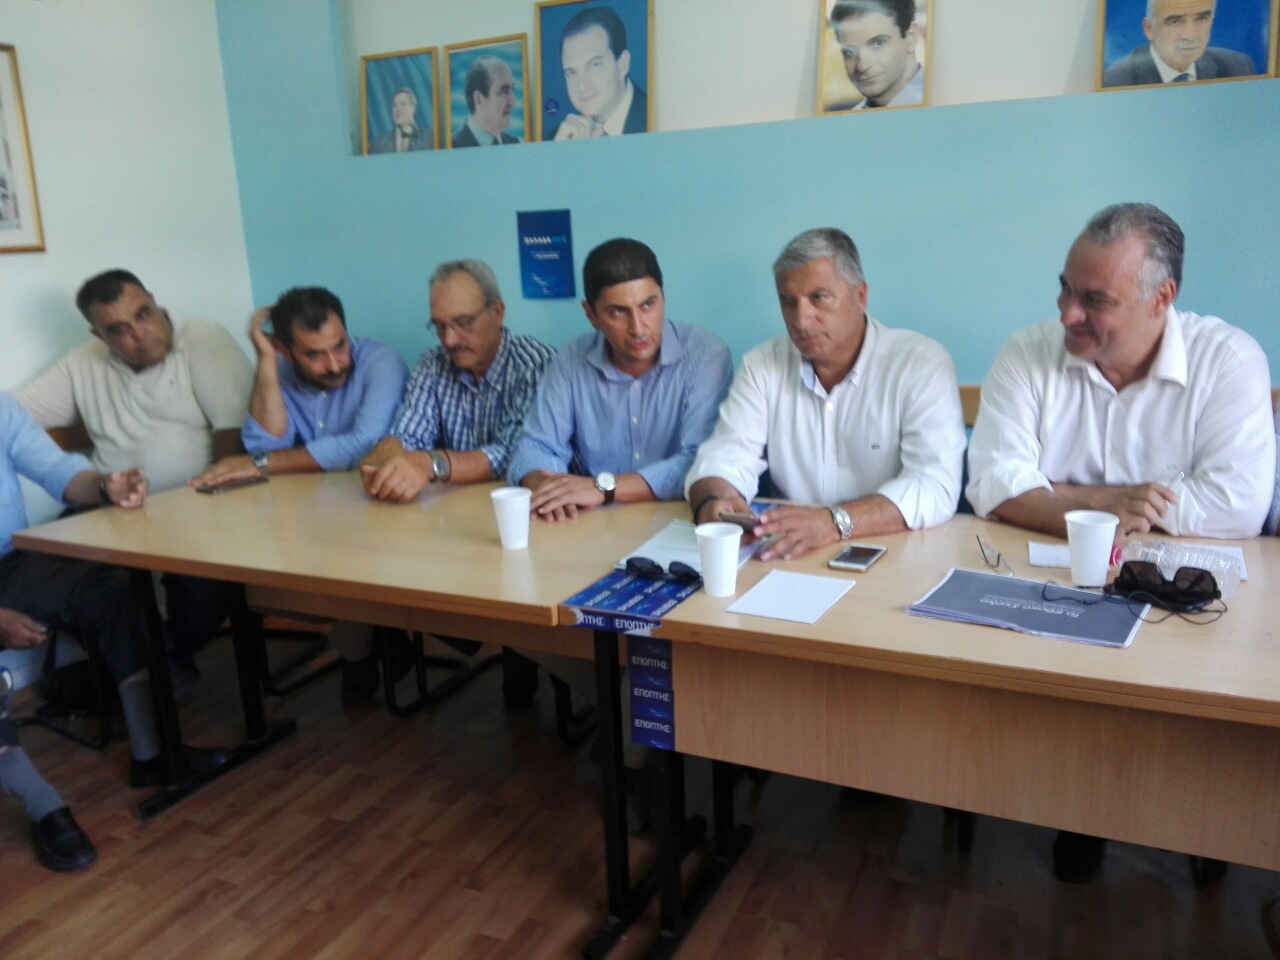 Αυτοδιοίκηση και προσφυγικό στην ατζέντα της ΝΟΔΕ Ηρακλείου- Έκτακτη συνεδρίαση παρουσία του Γ. Πατούλη 